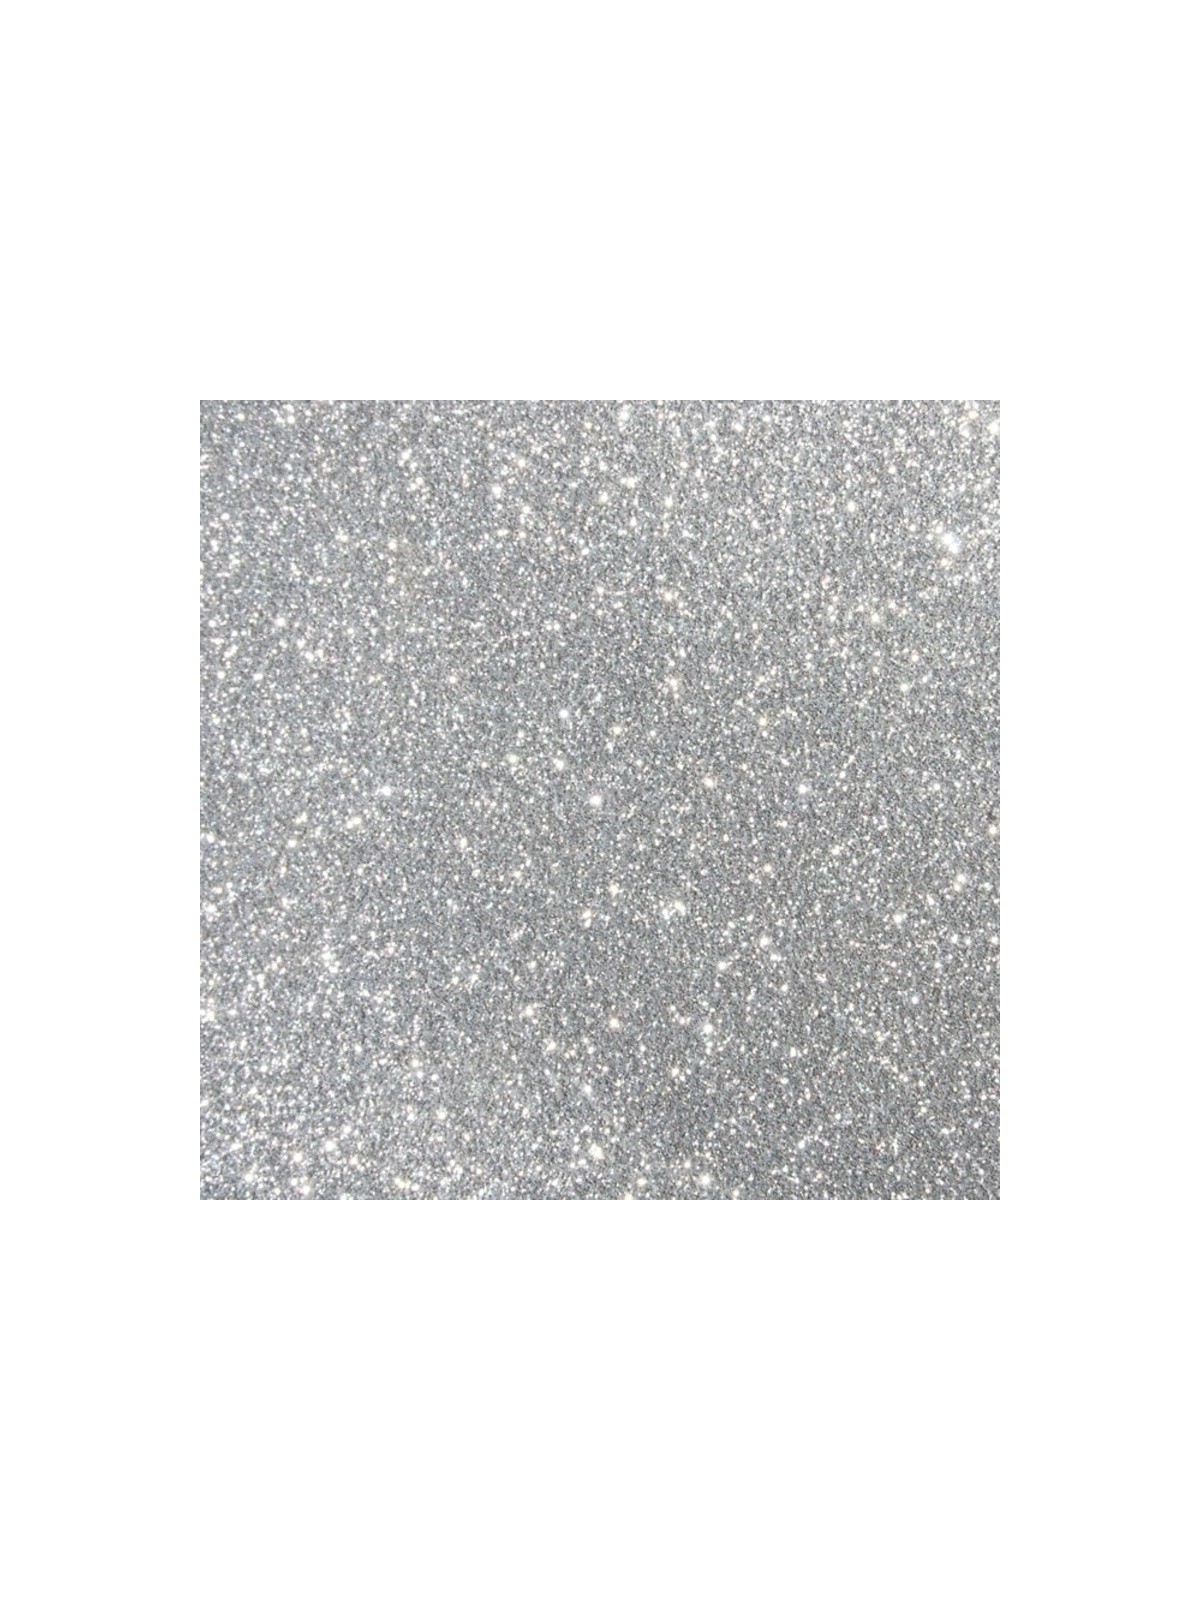 Sugarcity Decorative Glitter Silver Glitter 10ml